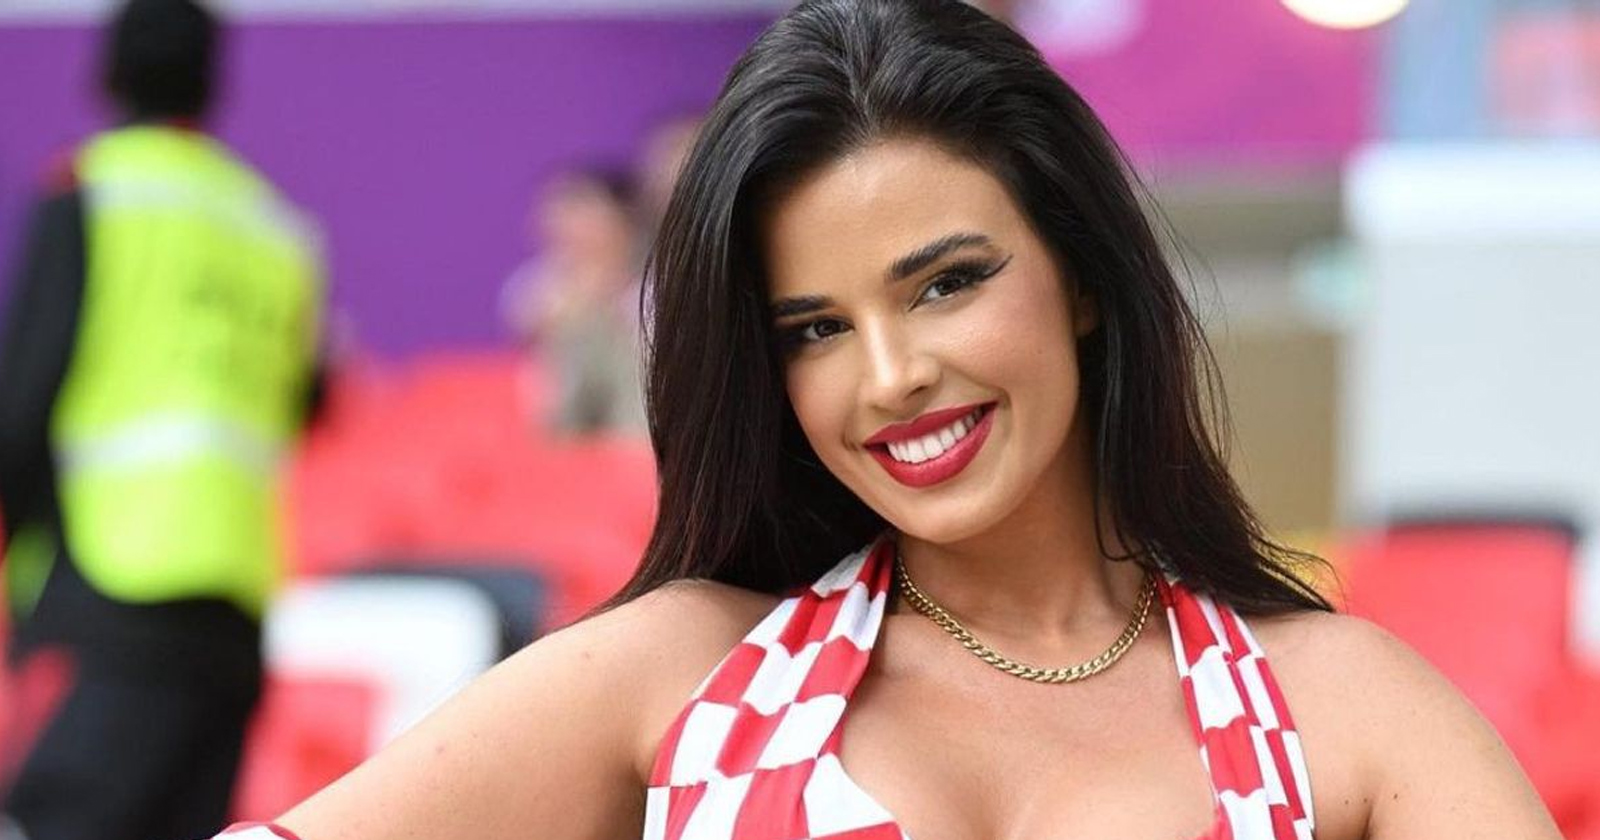 ملكة جمال كرواتيا إيفانا أحدثت ضجة بصورها بعد خضوعها لعمليات التجميل تركيا رصد